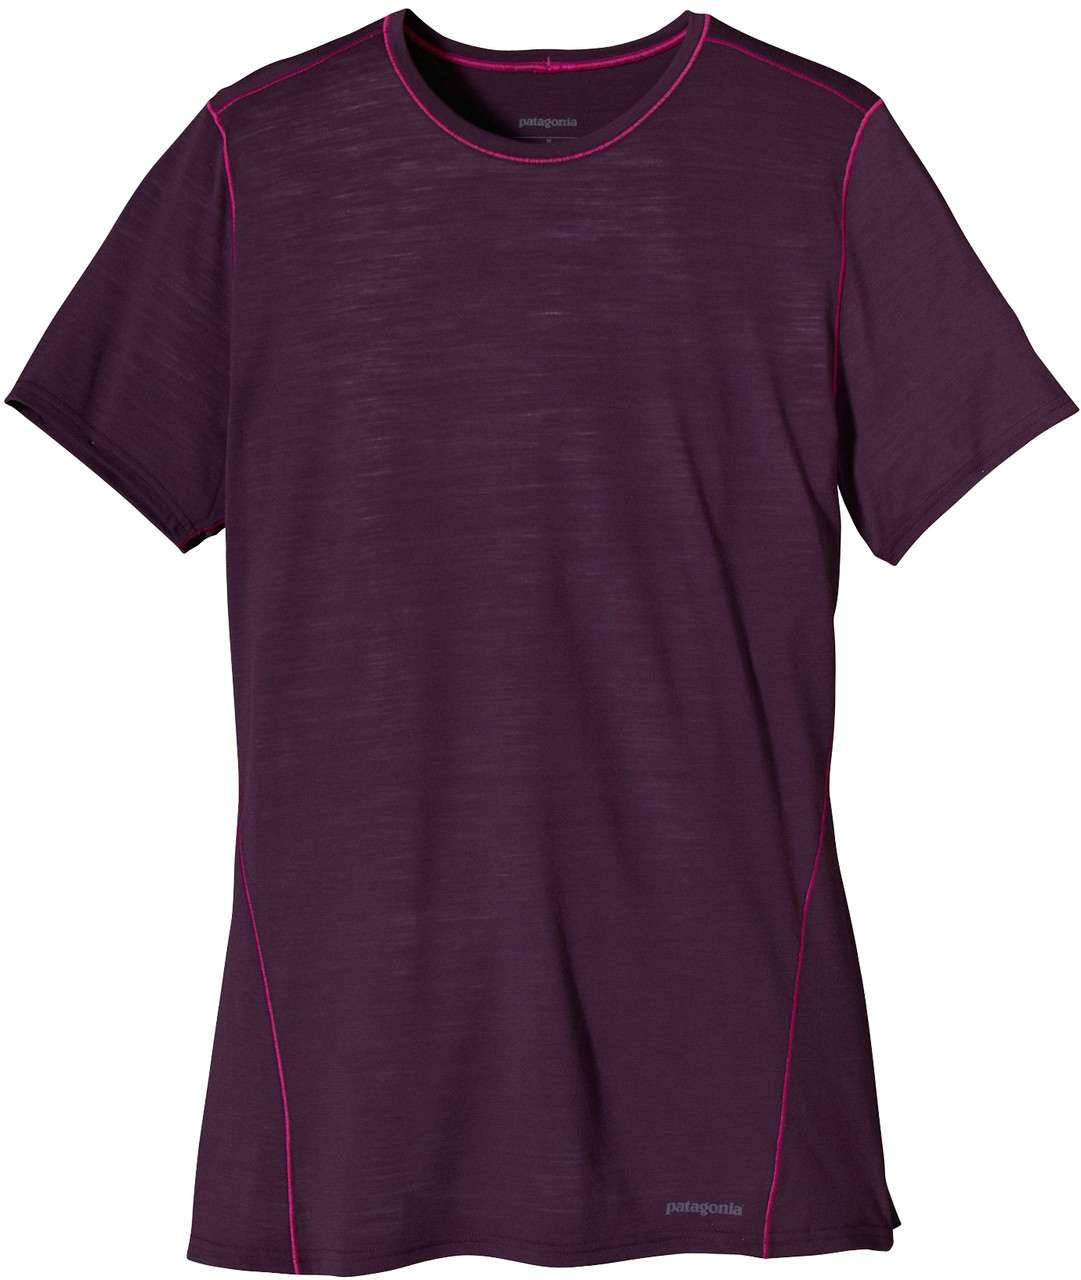 T-shirt ultraléger Merino 1 Prune sombre